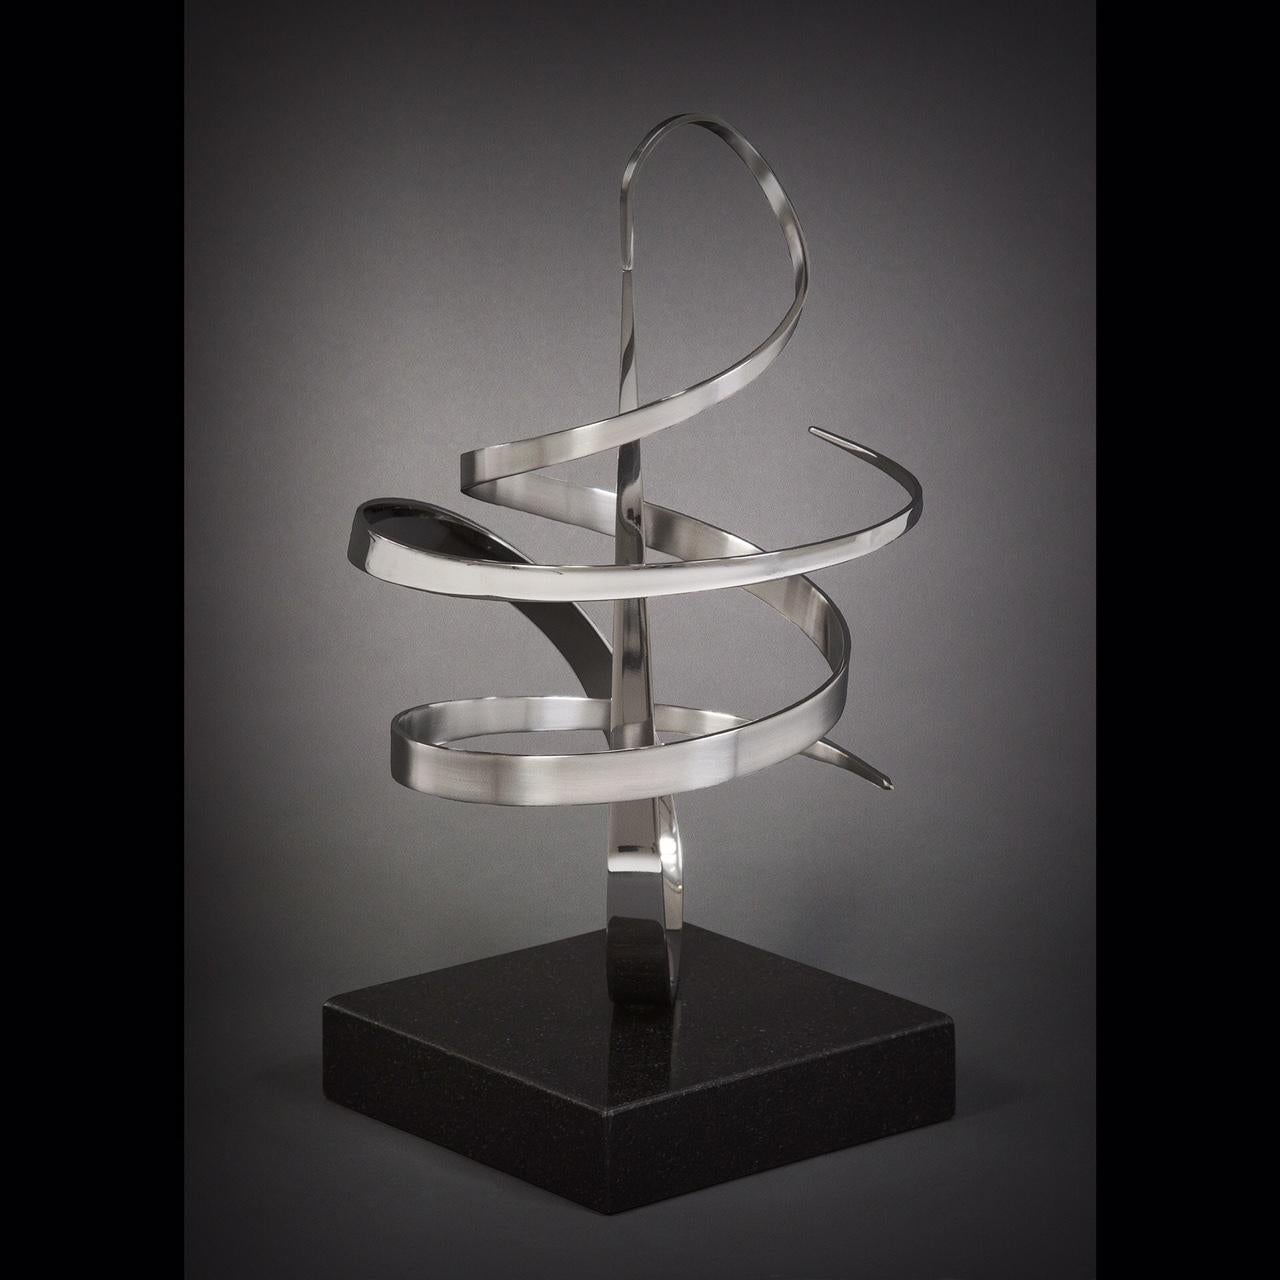 Abstract Sculpture Gary Traczyk - Orbit d'orbit